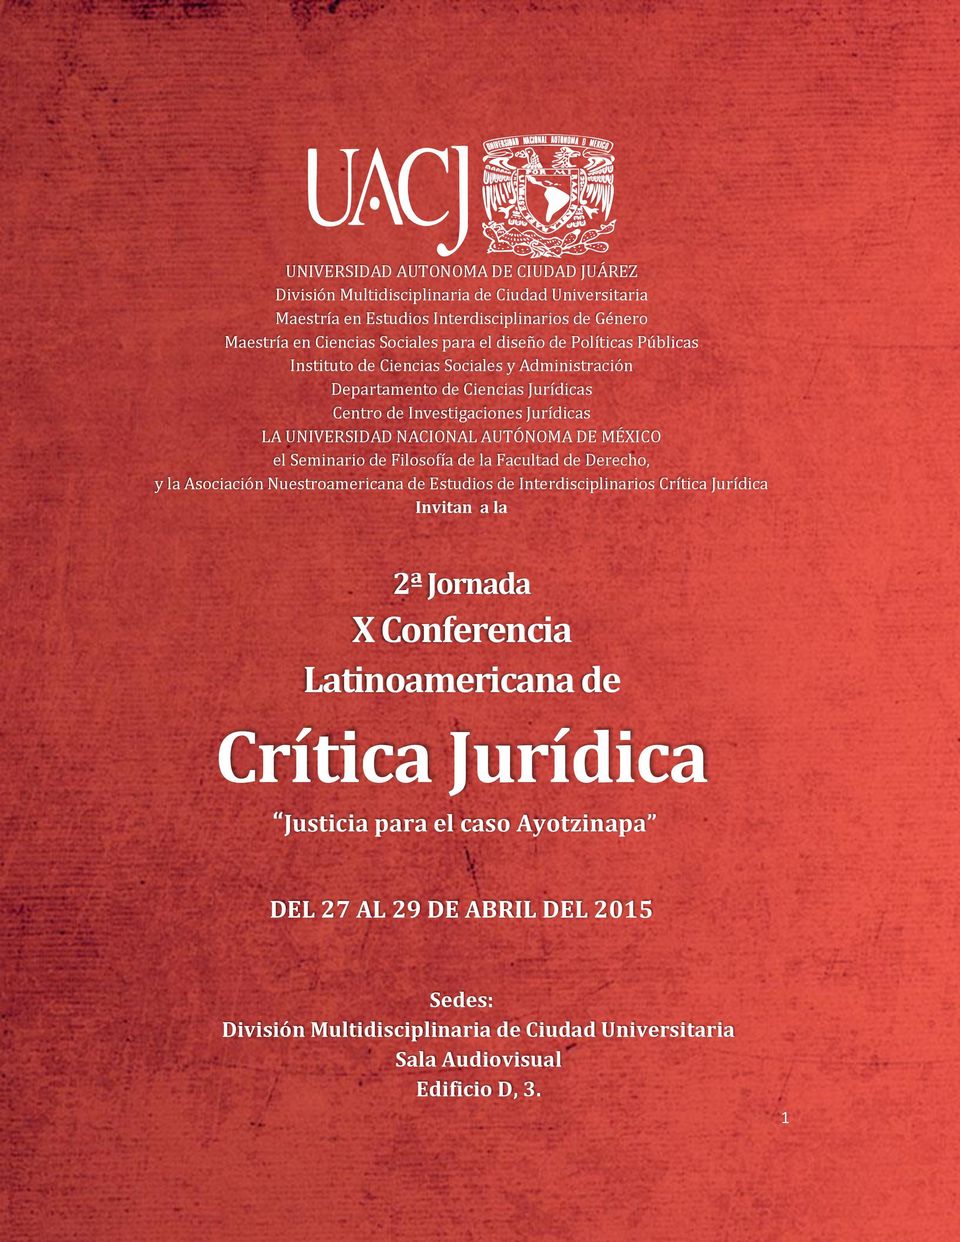 MÉXICO el Seminario de Filosofía de la Facultad de Derecho, y la Asociación Nuestroamericana de Estudios de Interdisciplinarios Crítica Jurídica Invitan a la 2ª Jornada X Conferencia